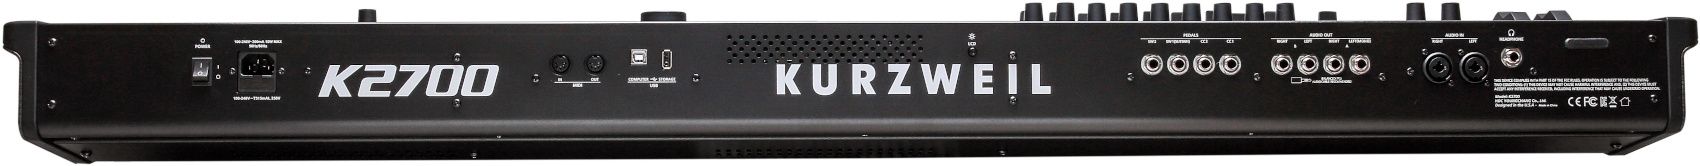 Kurzweil K2700 - фото 5